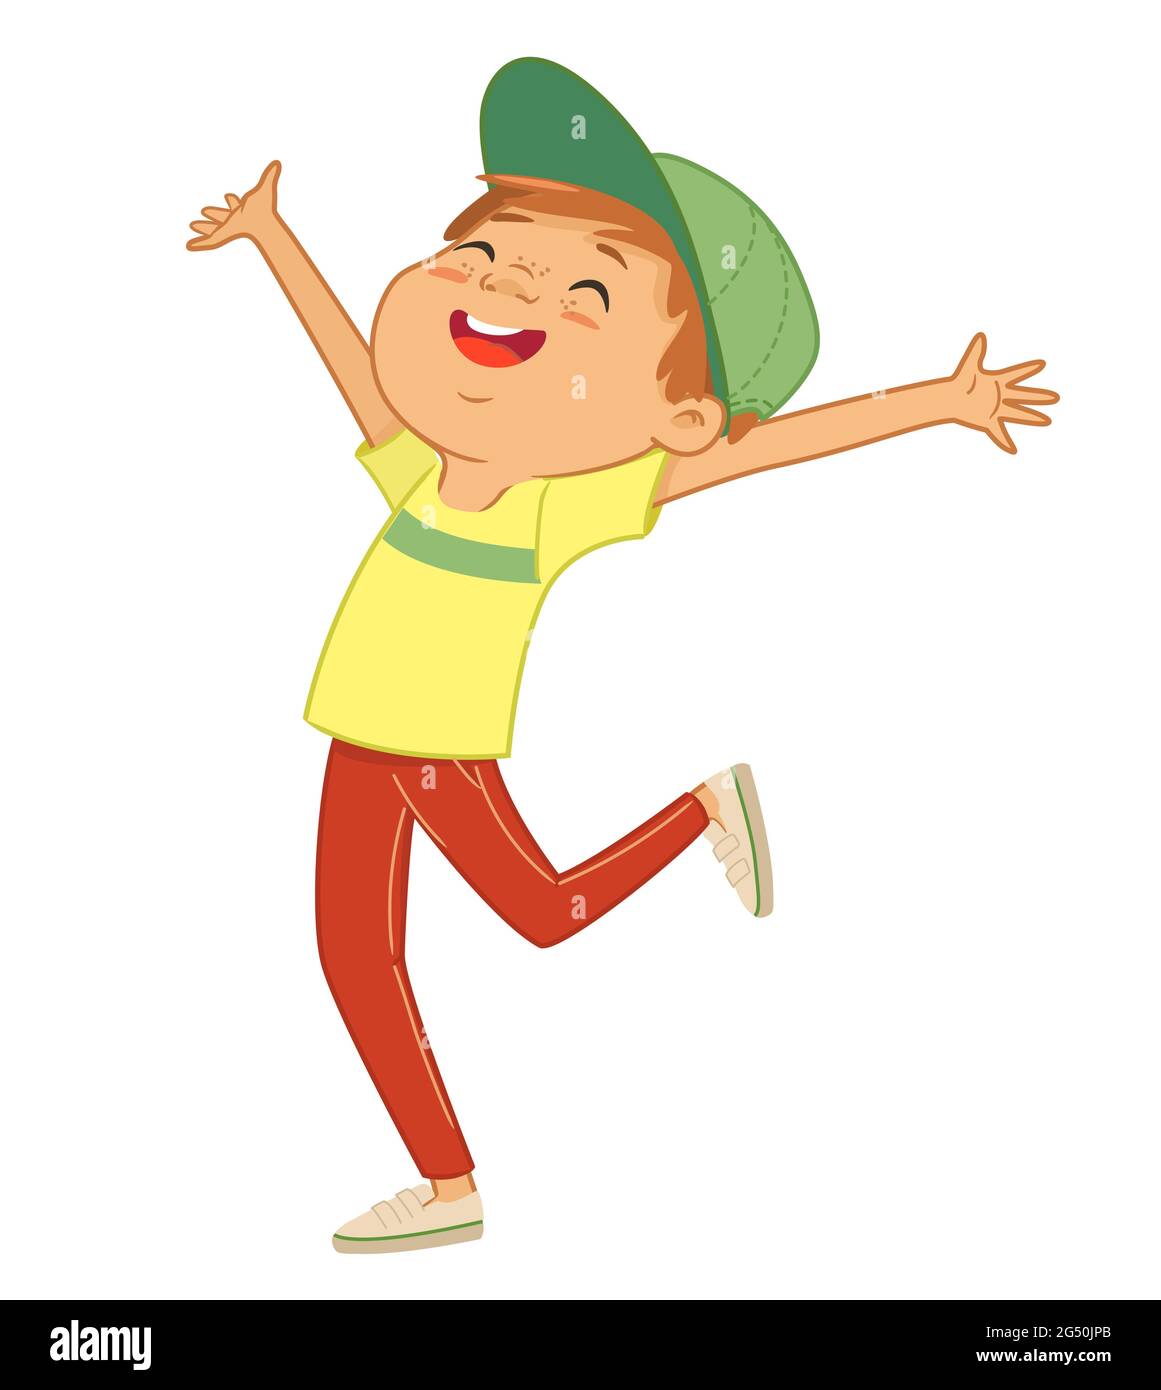 Illustrazione di un ragazzo caucasico felice che salta e balla. Illustrazione Vettoriale